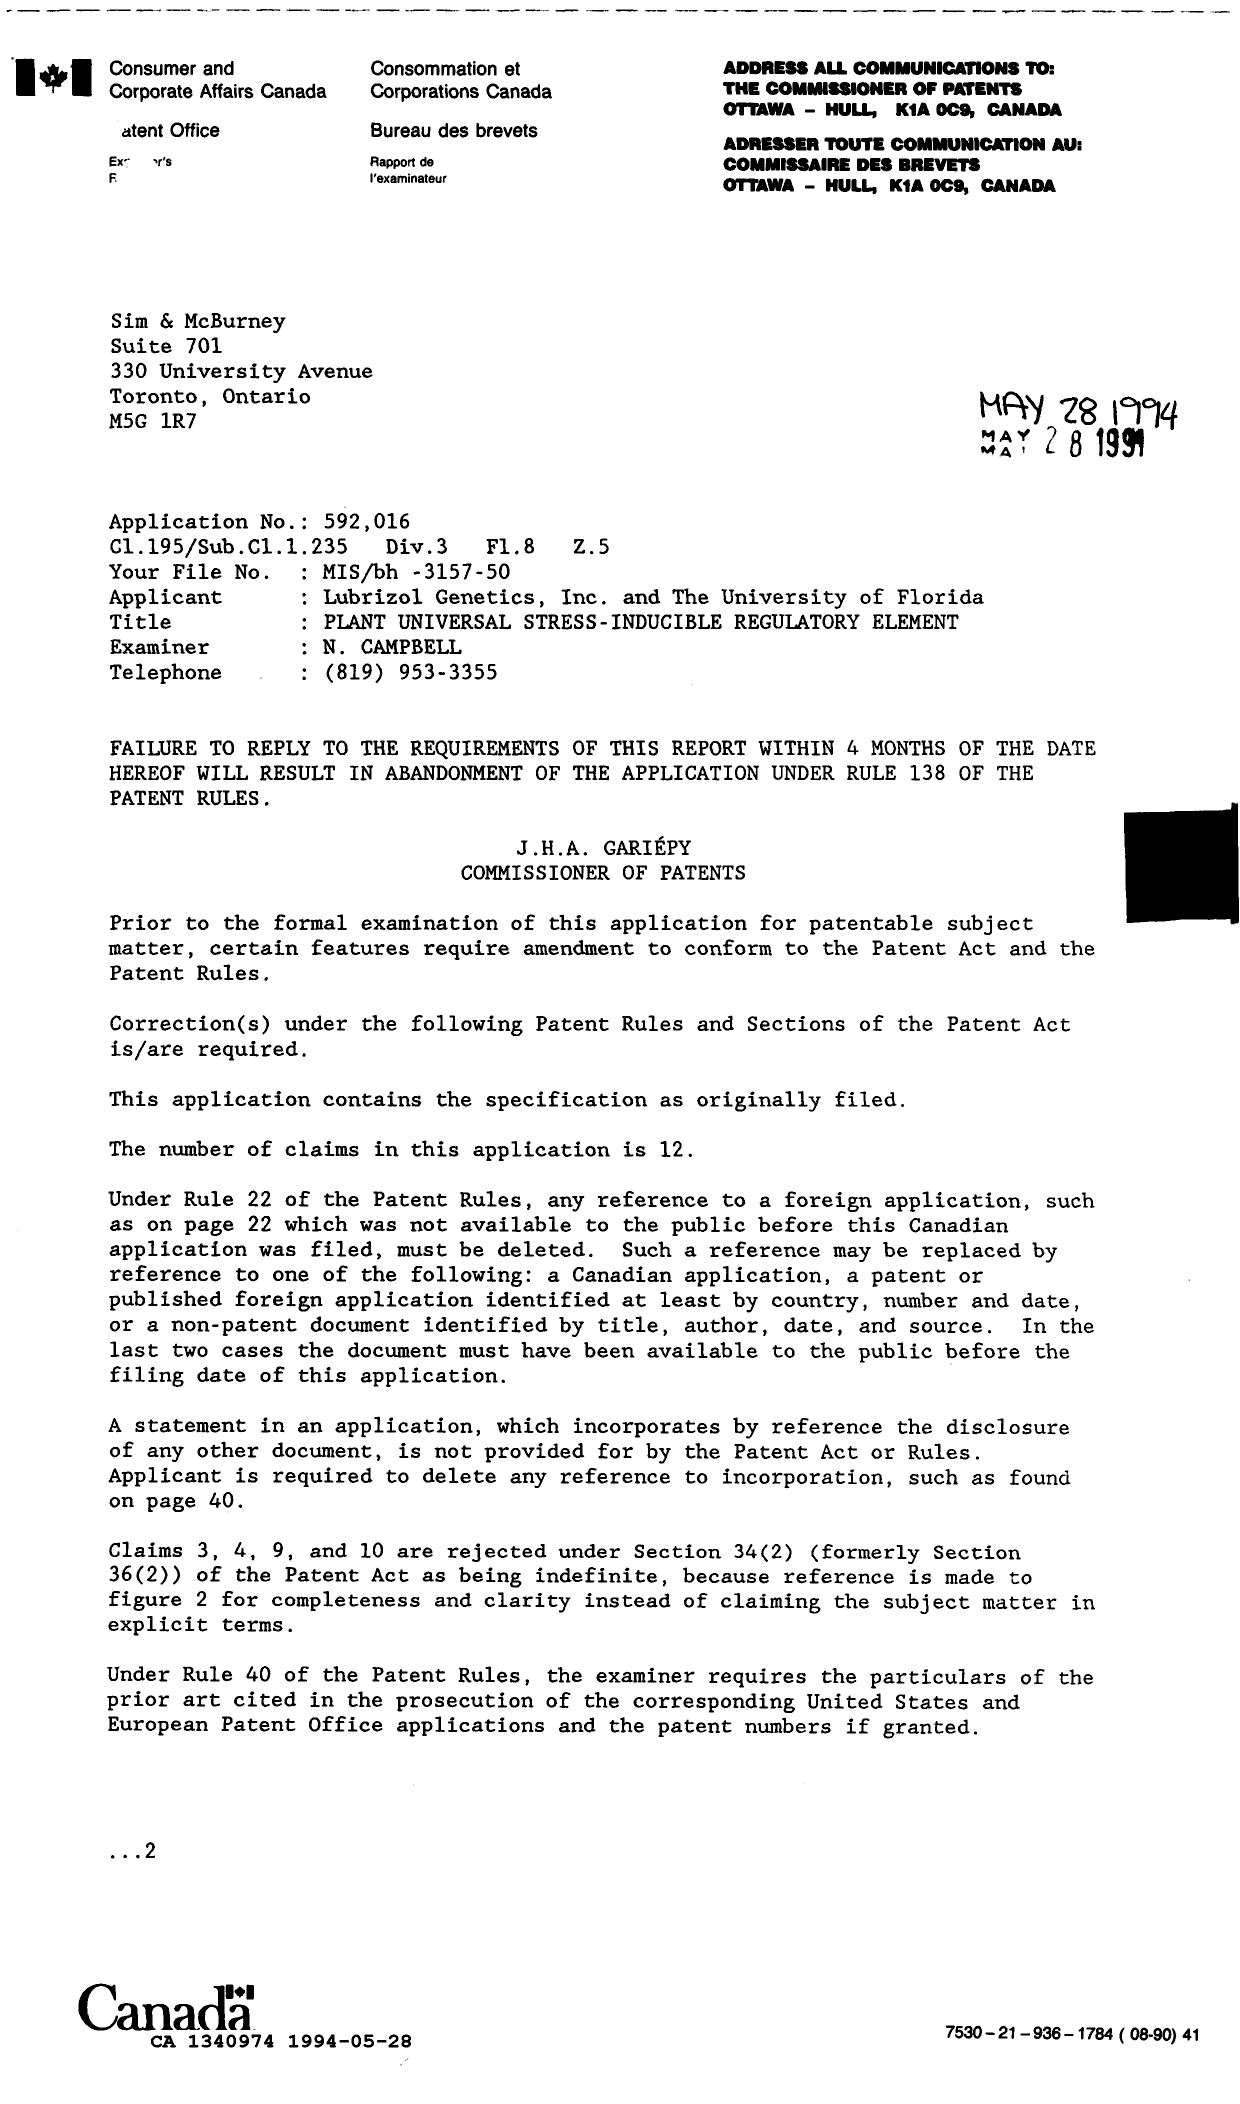 Document de brevet canadien 1340974. Demande d'examen 19940528. Image 1 de 2